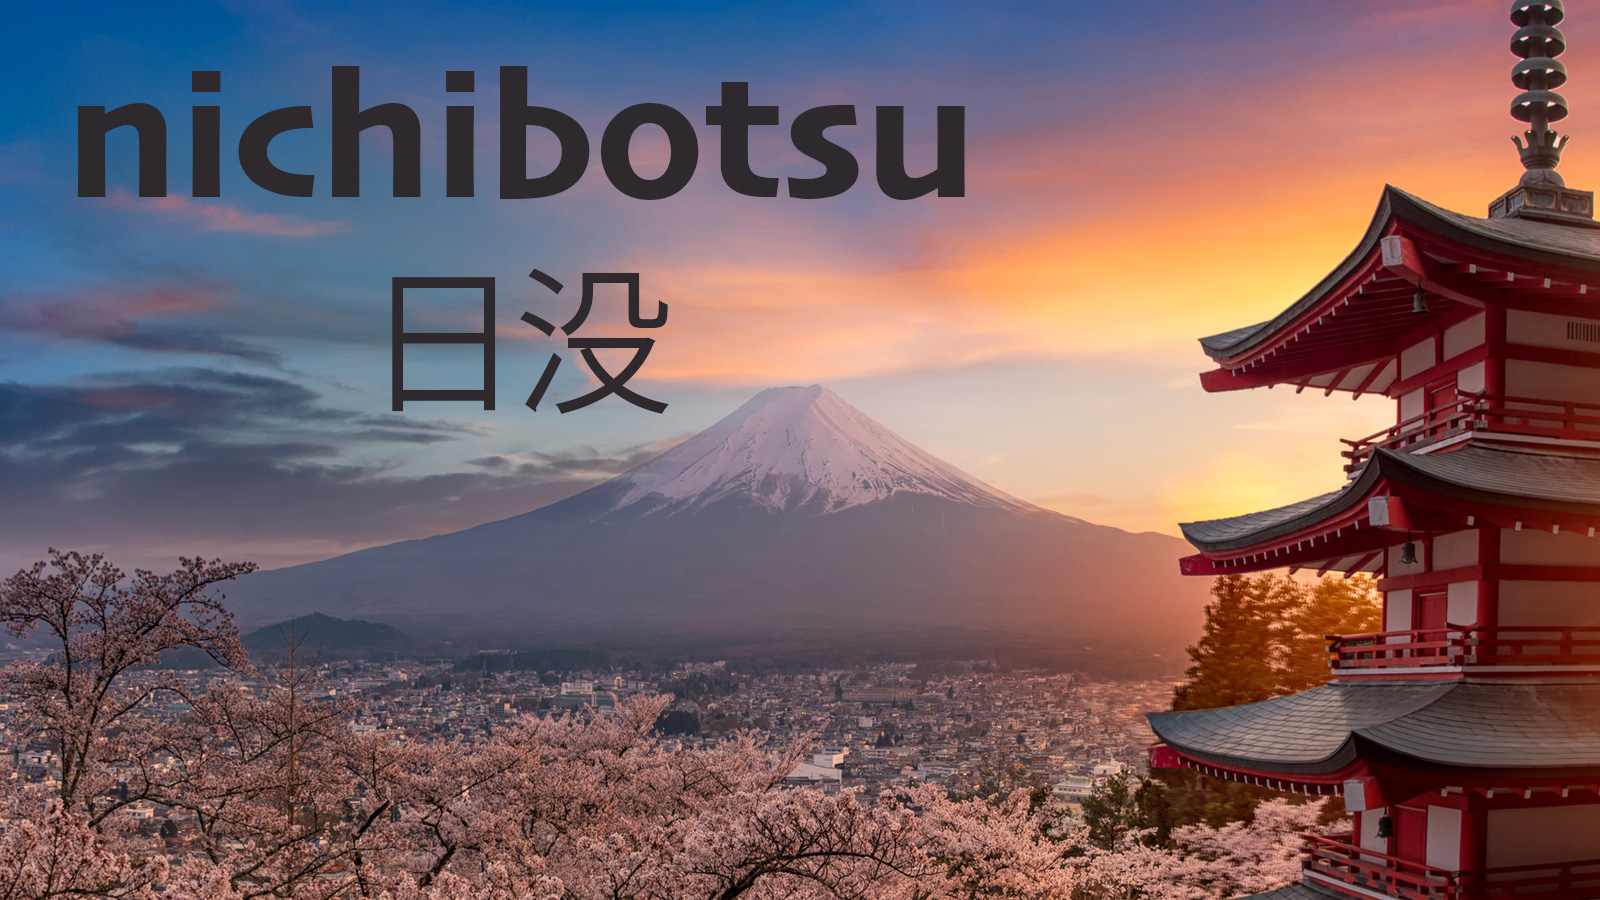 beautiful japanese word nichibotsu means sunset